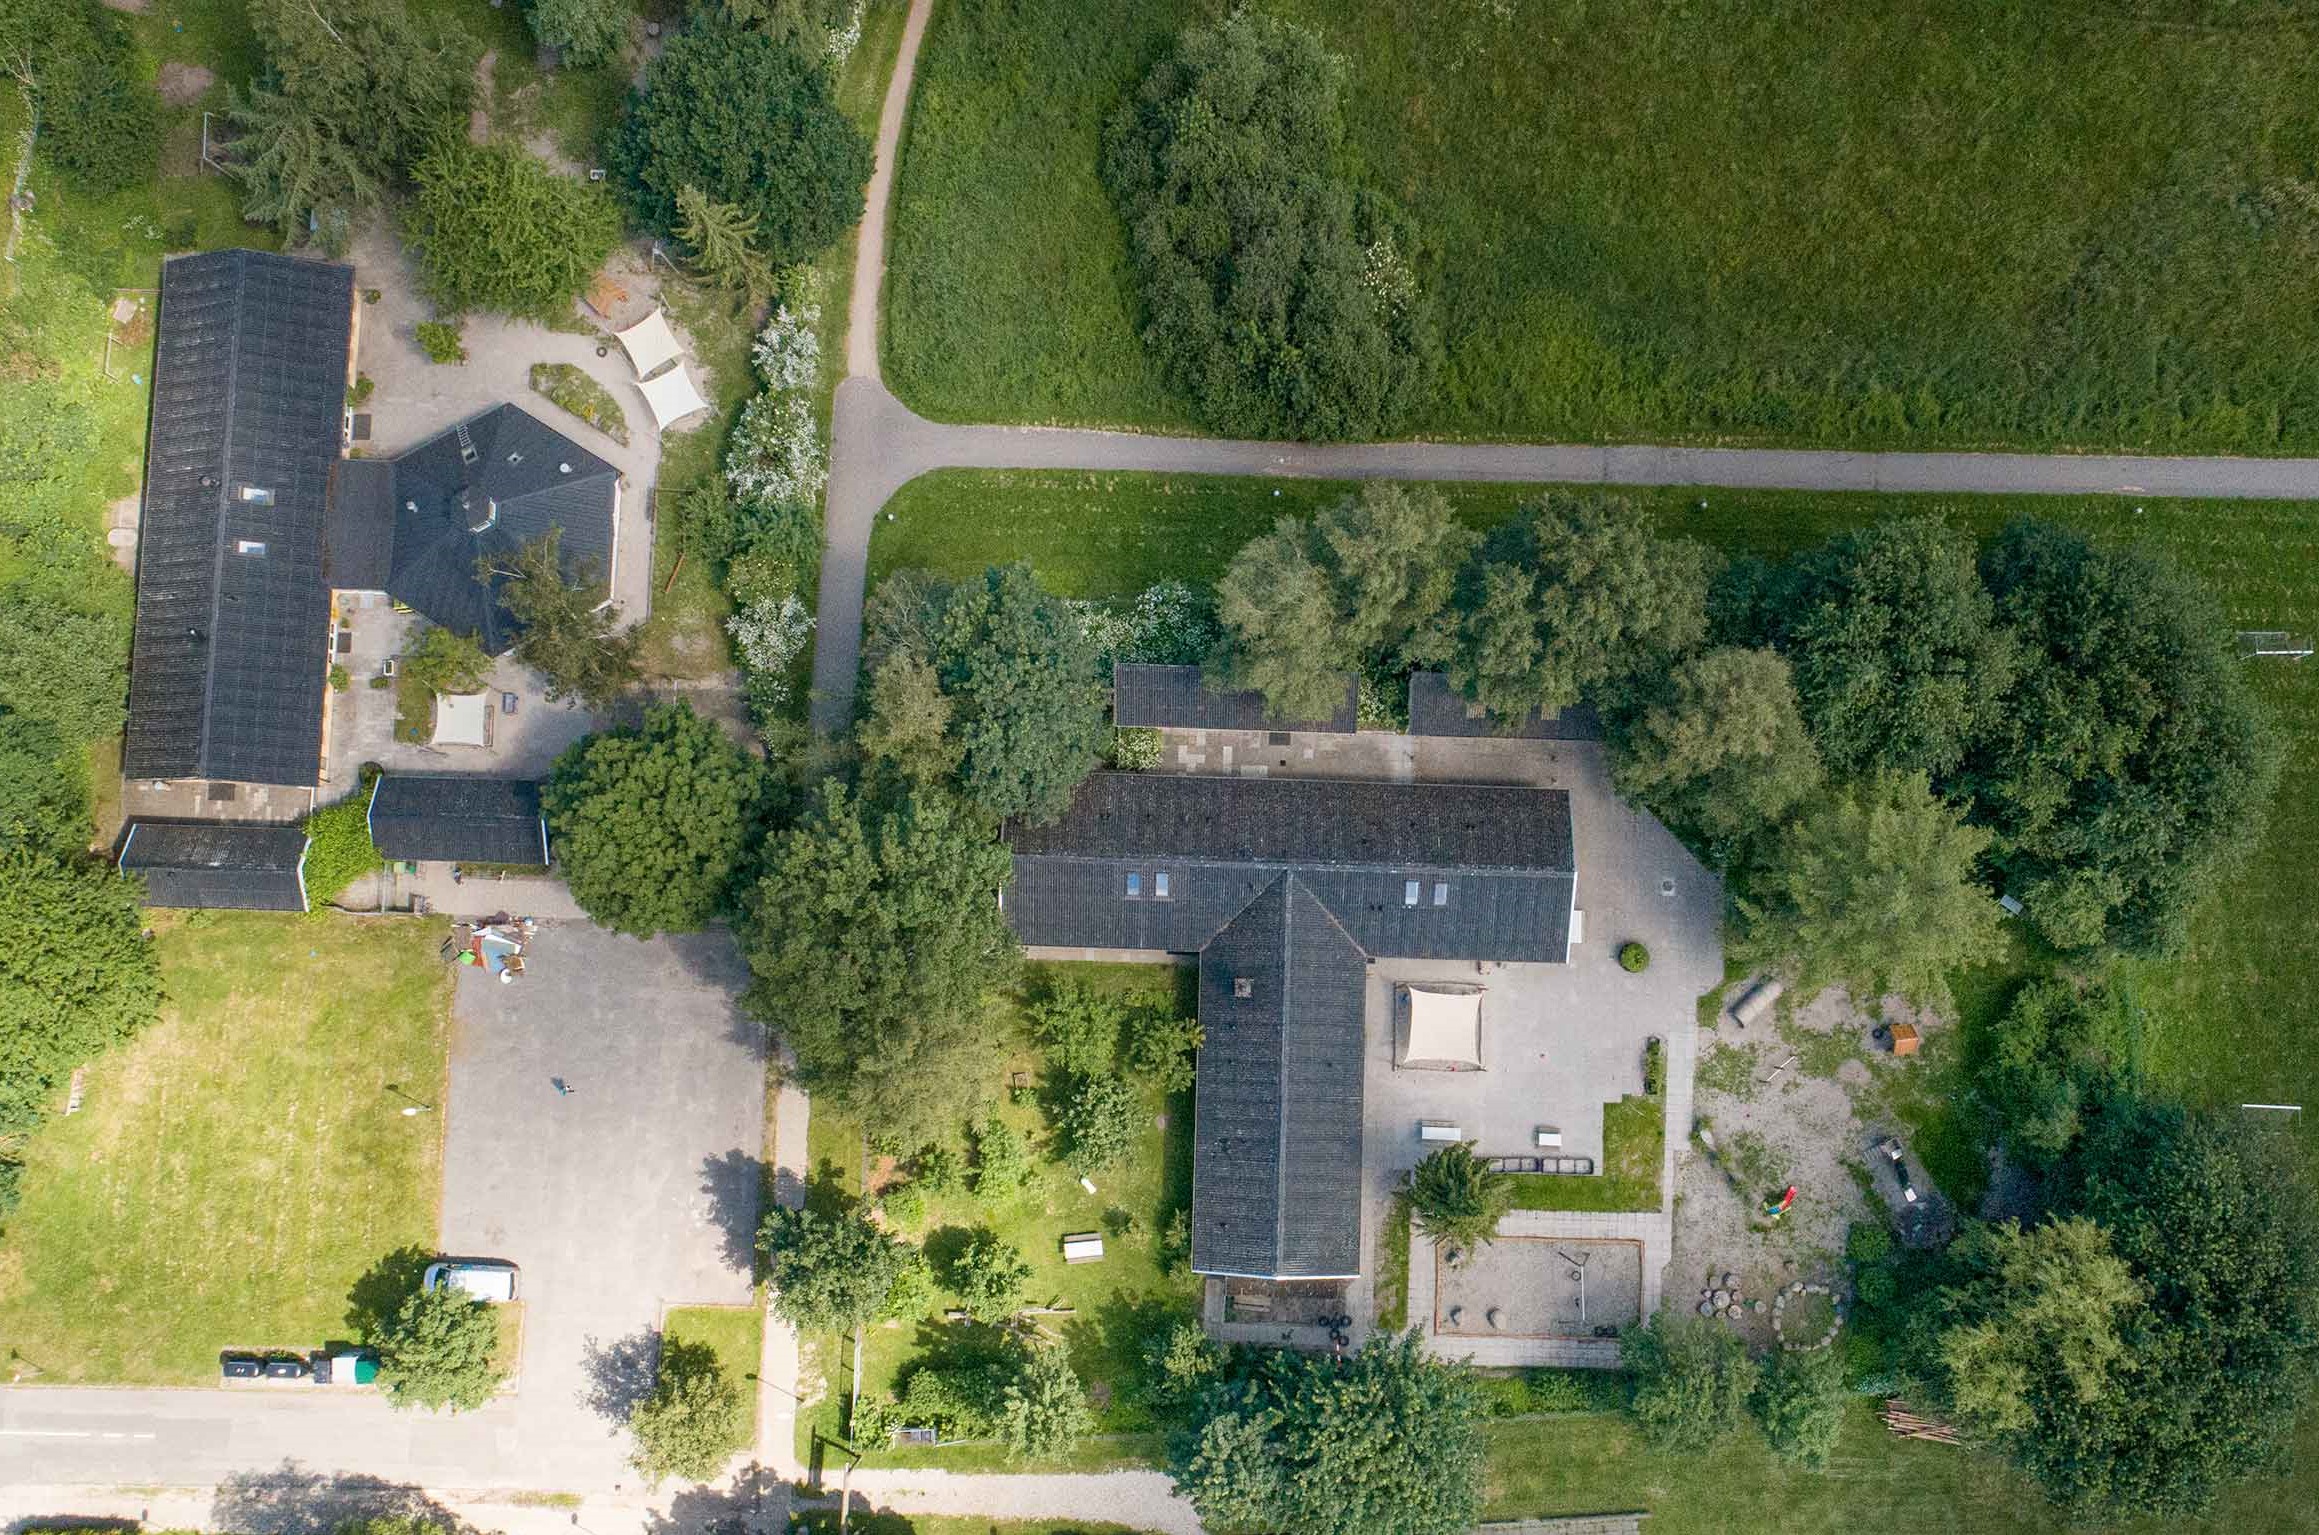 Et luftfoto af begge hus